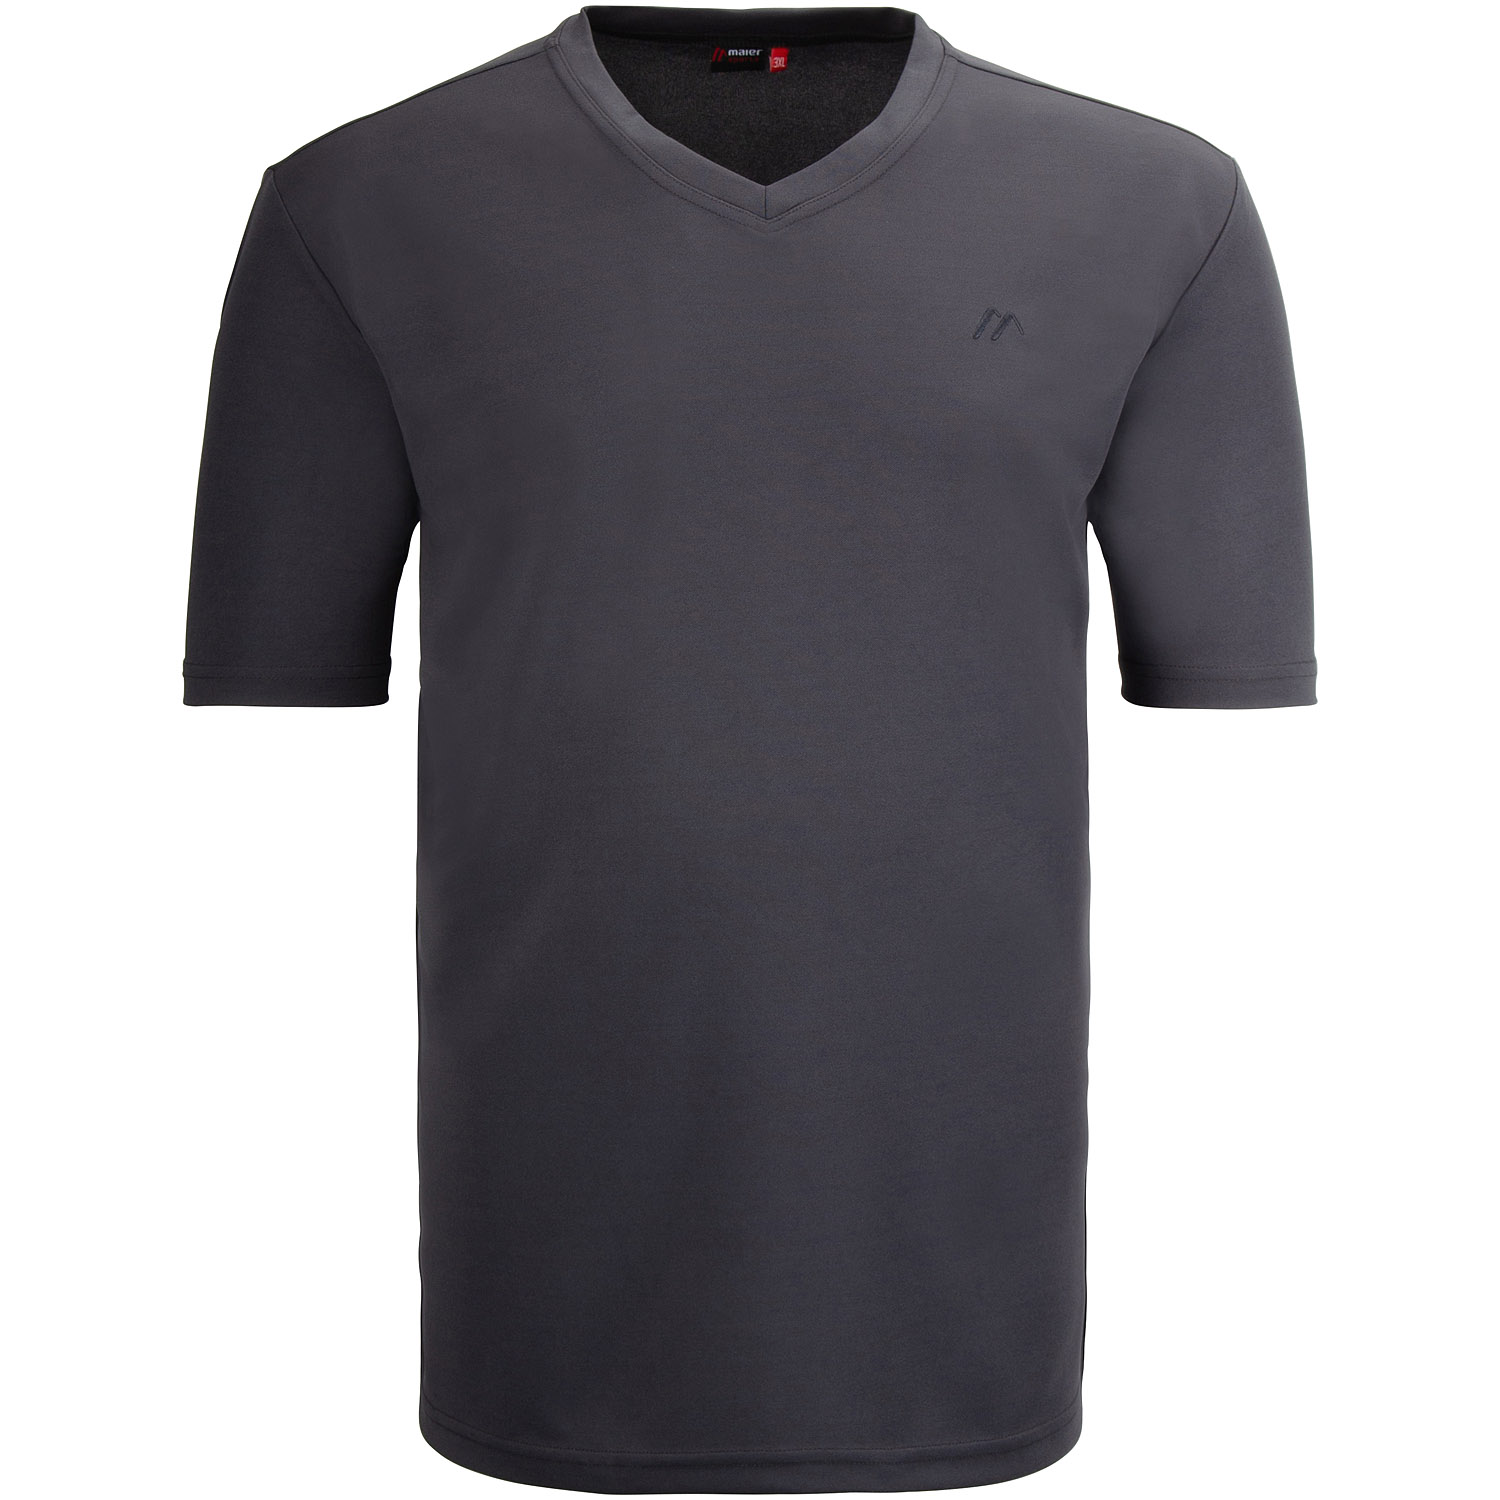 MAIER SPORTS T-Shirt grau Herrenmode kaufen in Übergrößen